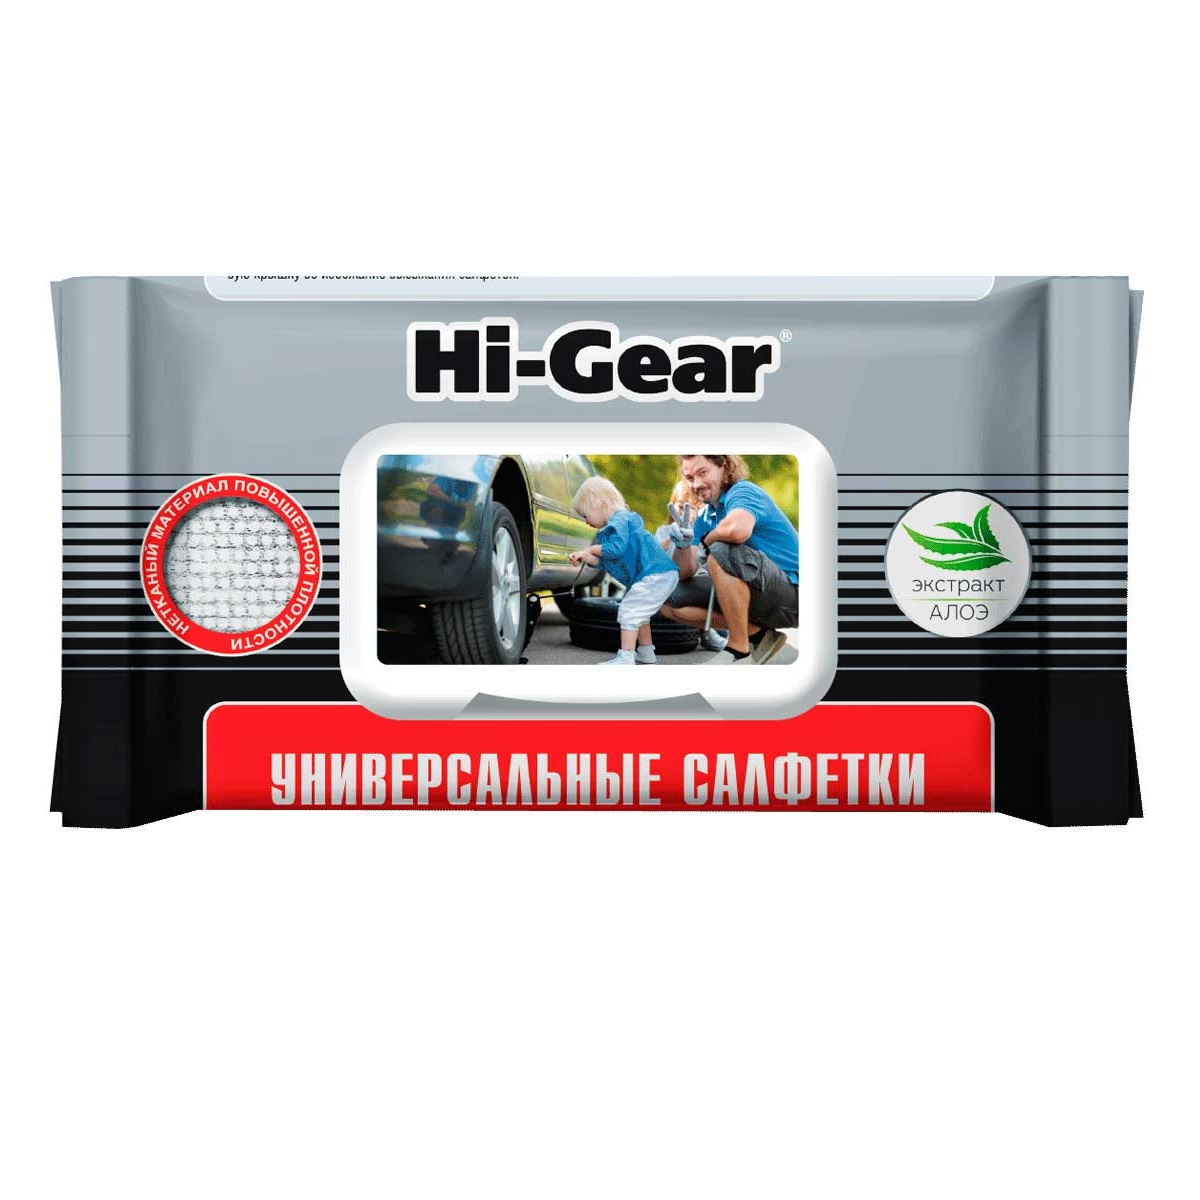 Салфетки Универсальные 60 Шт Hi-Gear hg5608